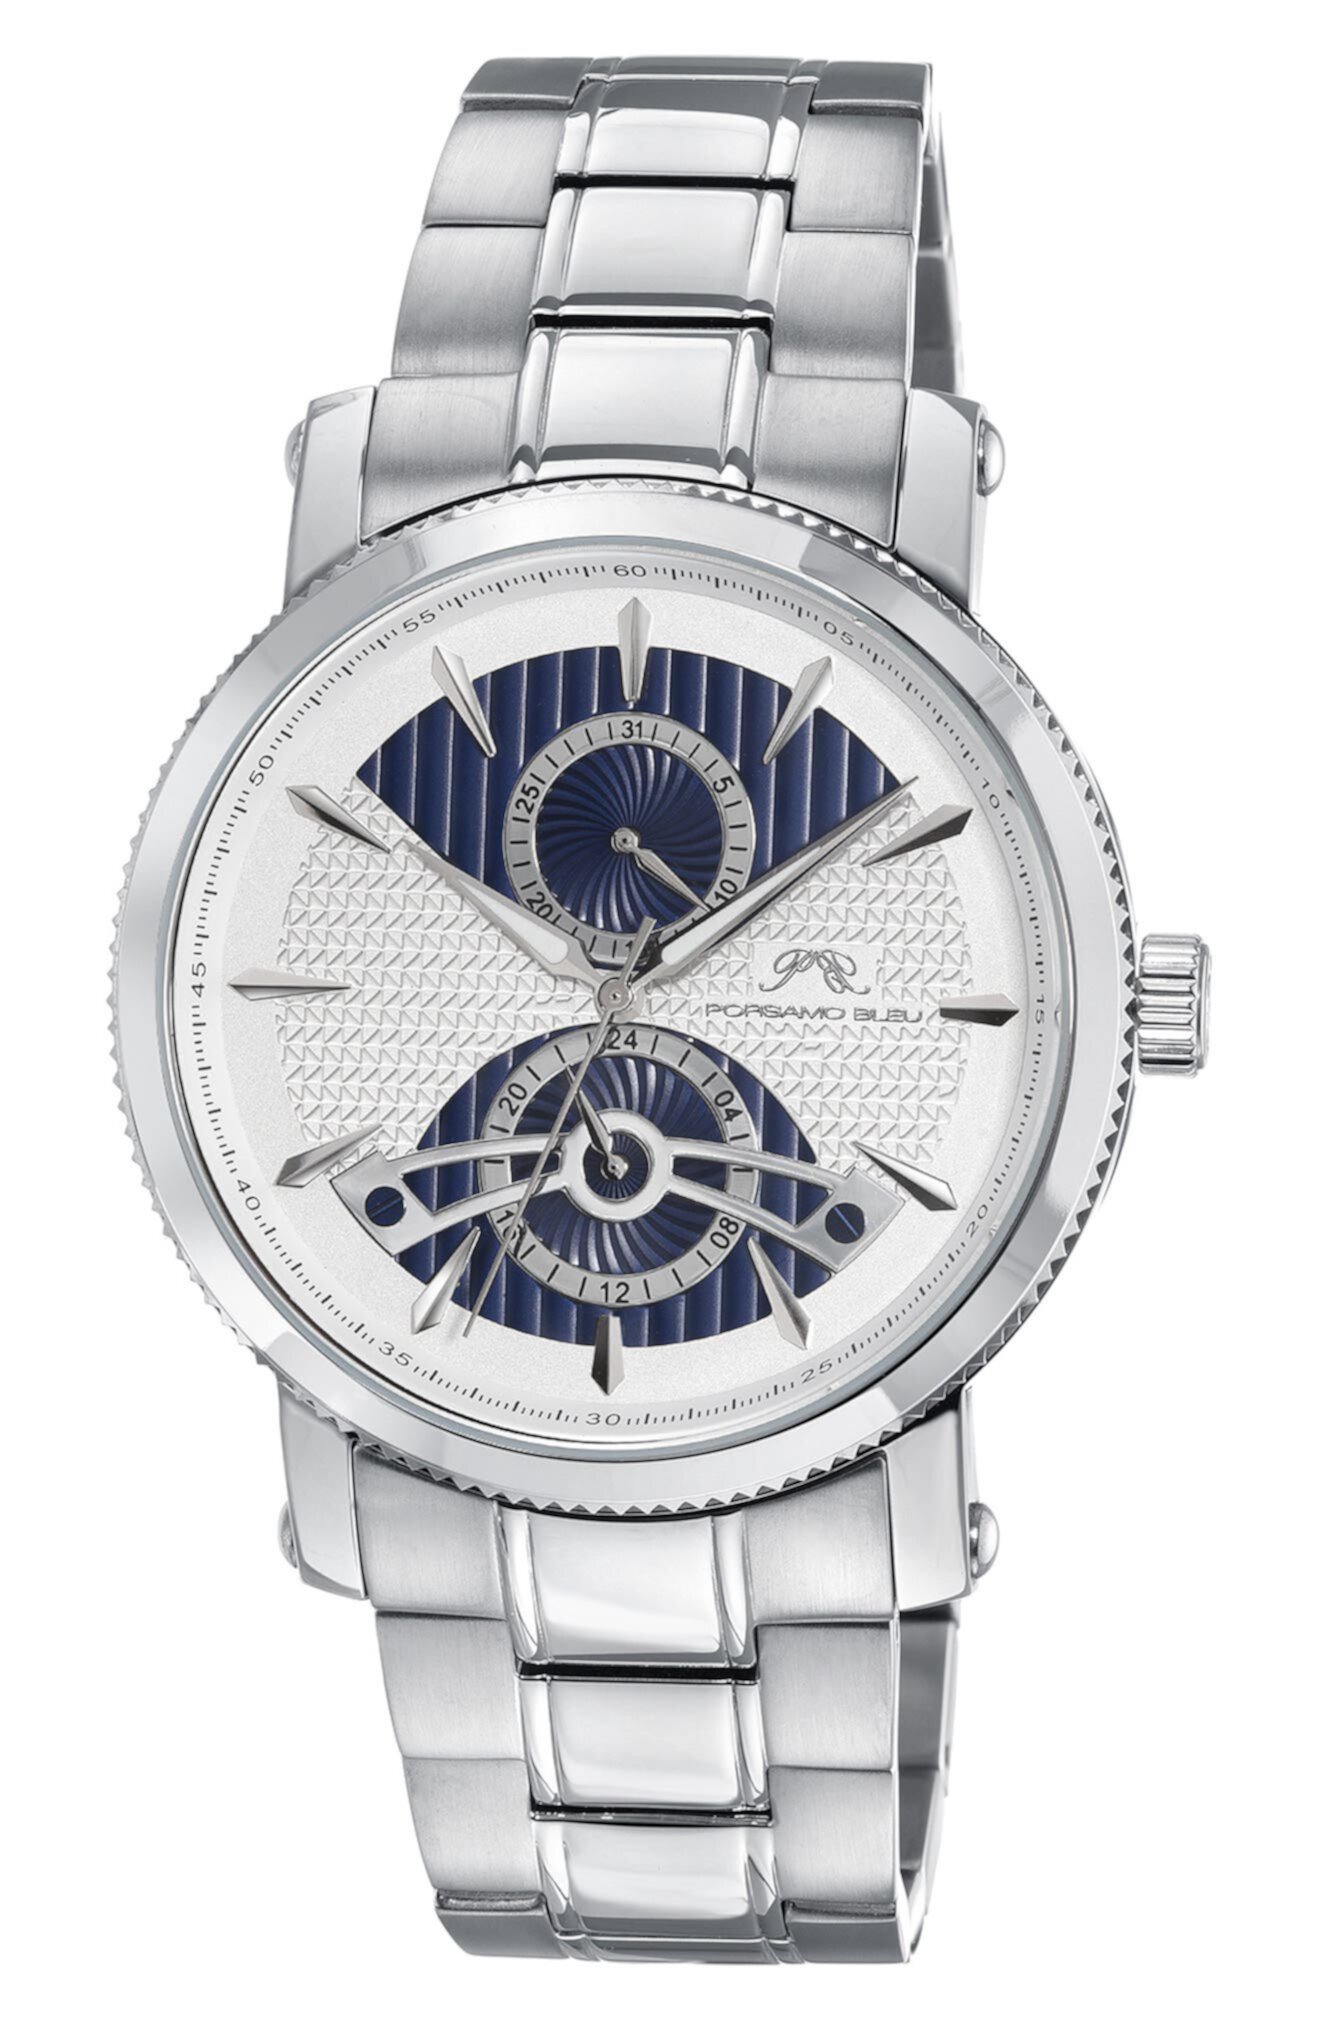 Мужские роскошные многофункциональные часы Russel из нержавеющей стали, 46 мм Porsamo Bleu